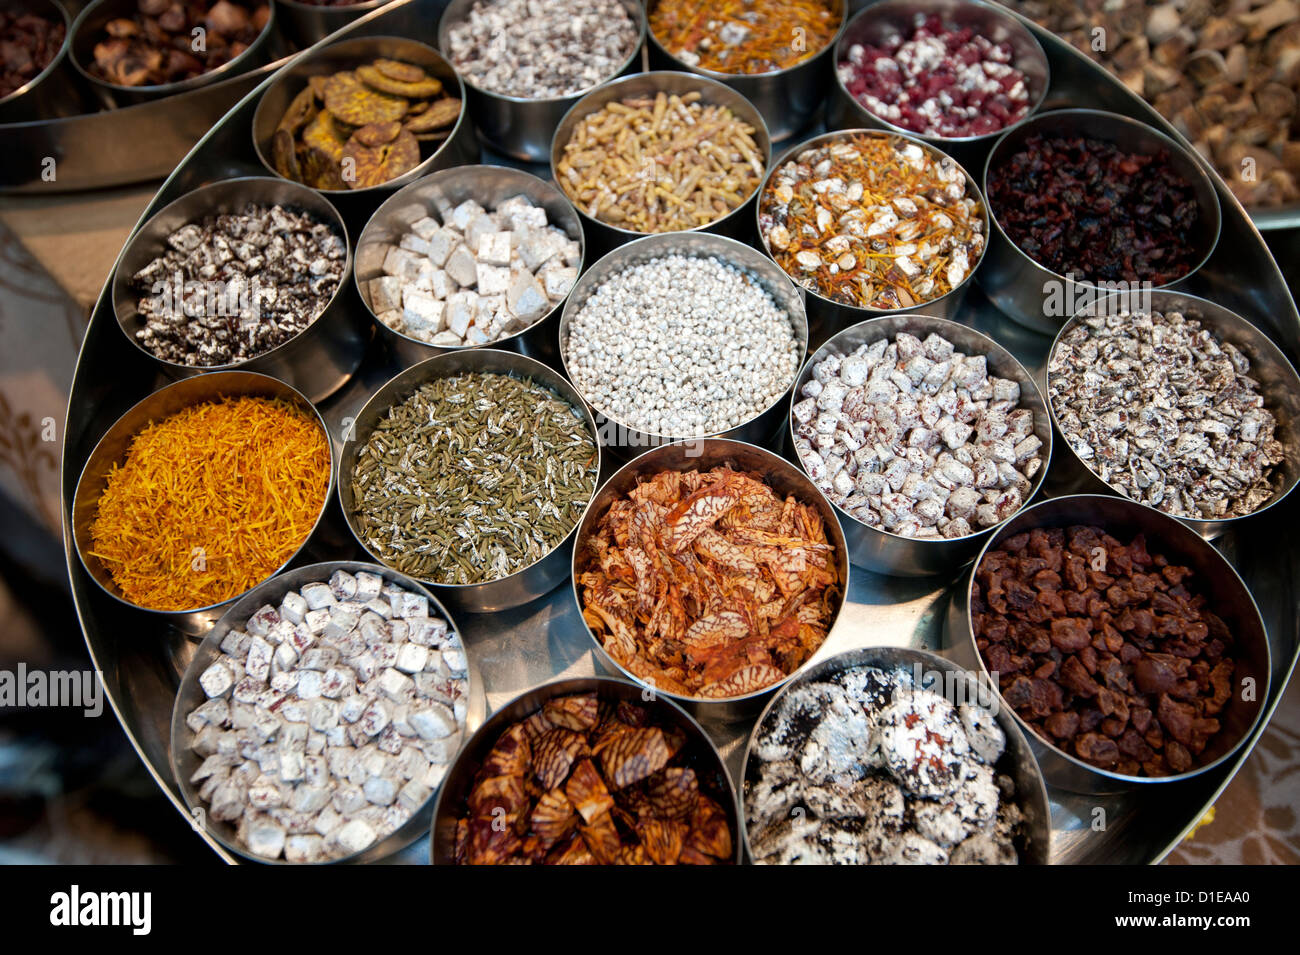 Sonf, Mund Lufterfrischer in Aluminium Töpfe beschichtet einige in Silber, in Sonf Stall im Markt, Kolkata, Westbengalen, Indien Stockfoto